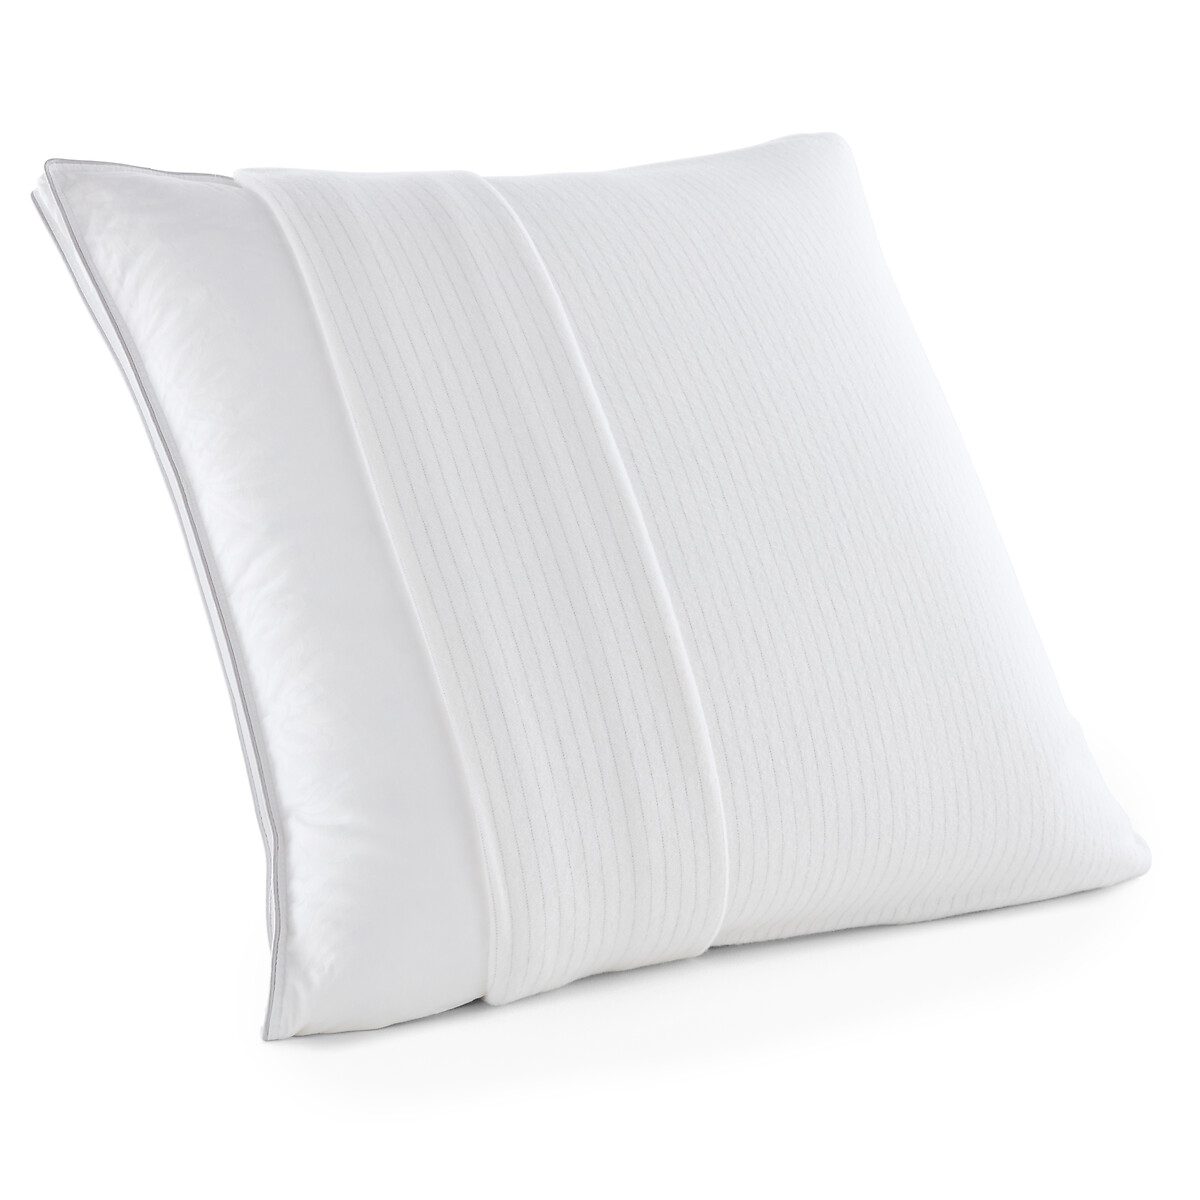 Чехол Защитный на подушку из мольтона 40 x 60 см белый